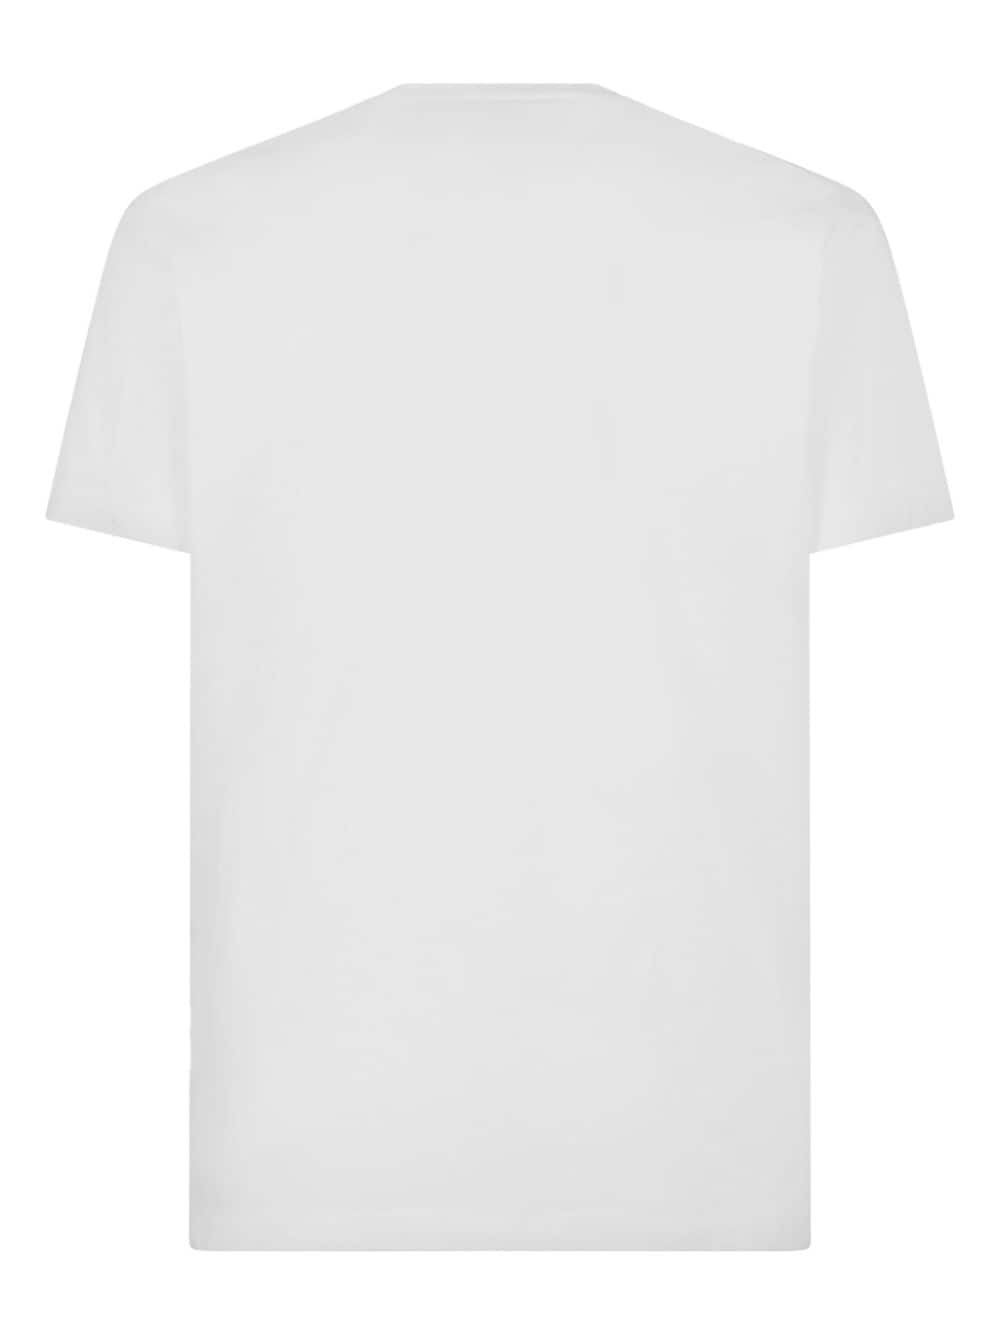 T-shirt blanc avec imprimé